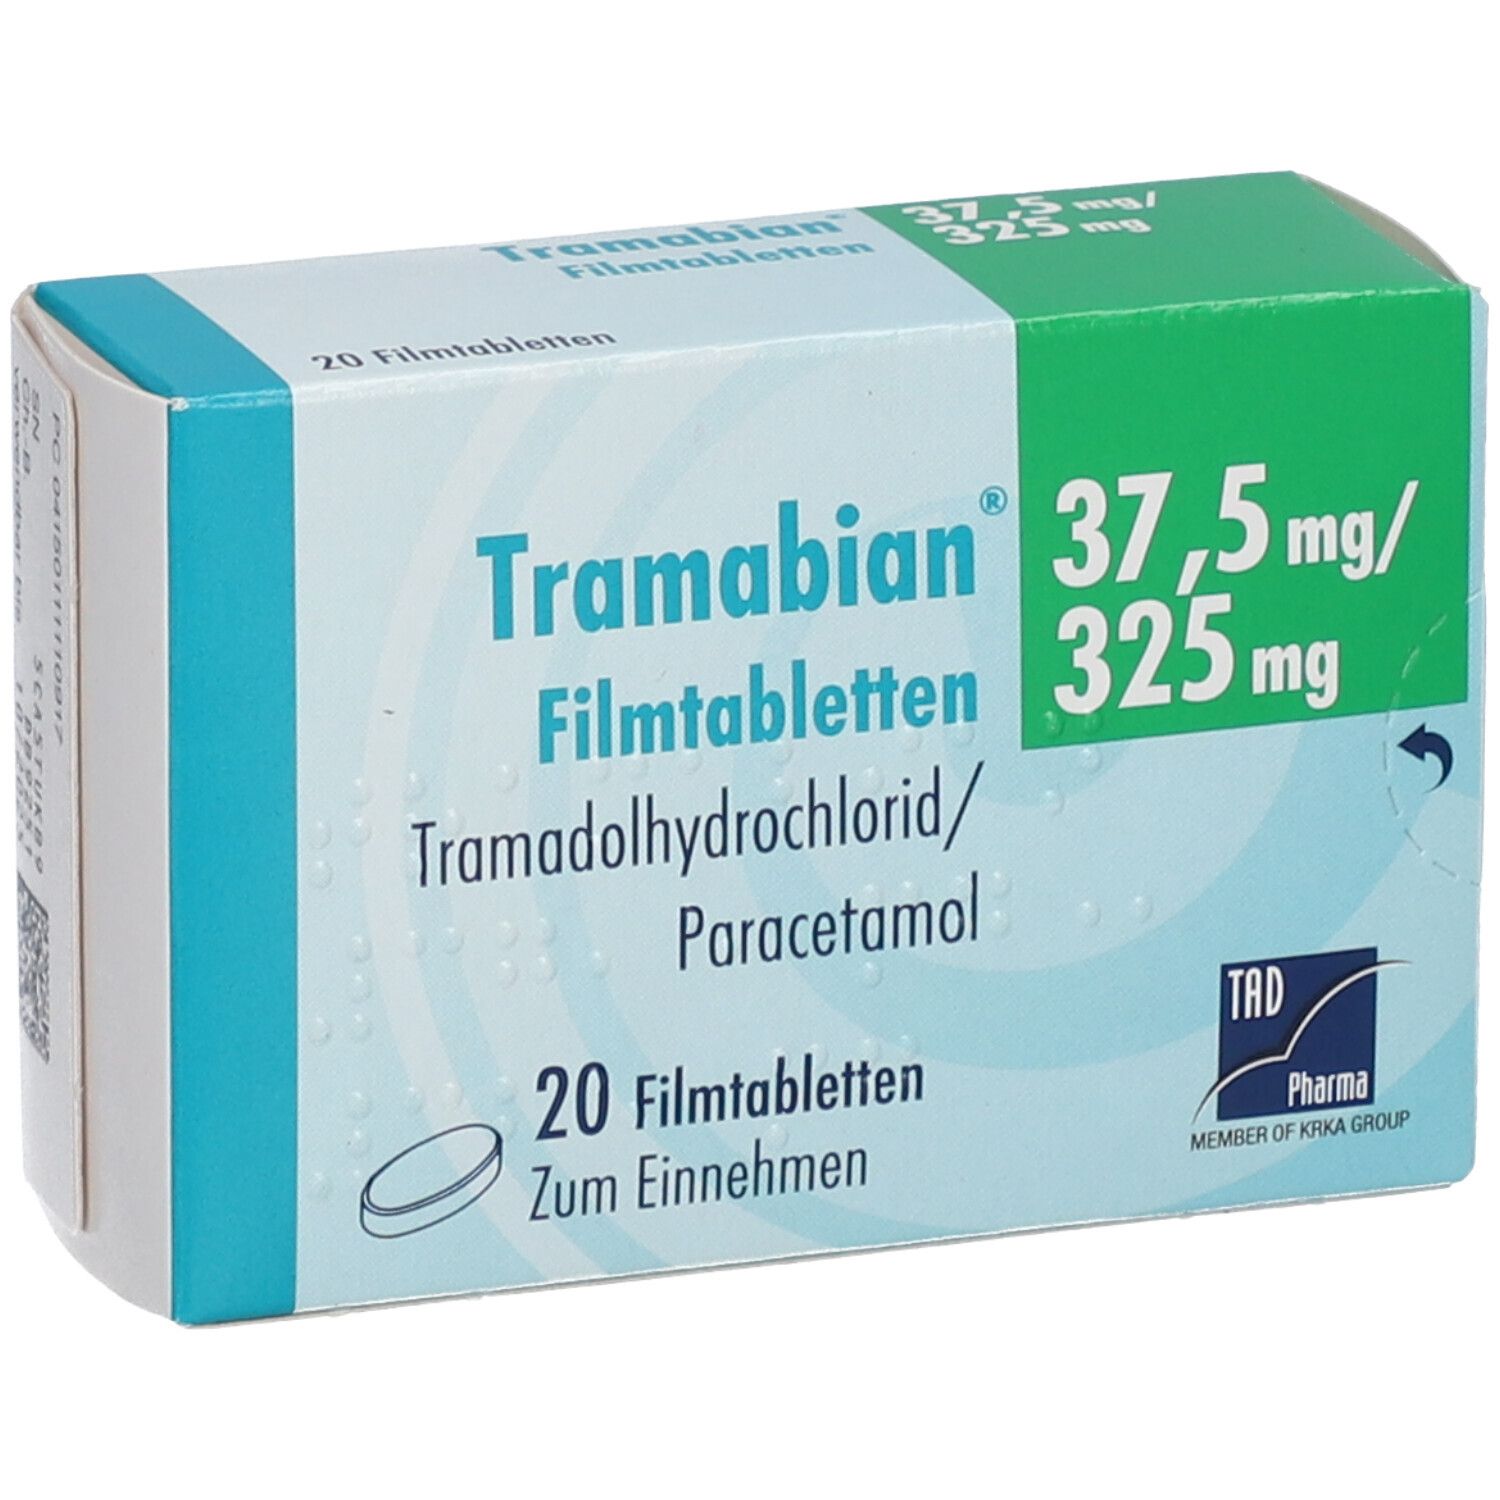 Tramabian® 37,5 mg/325 mg